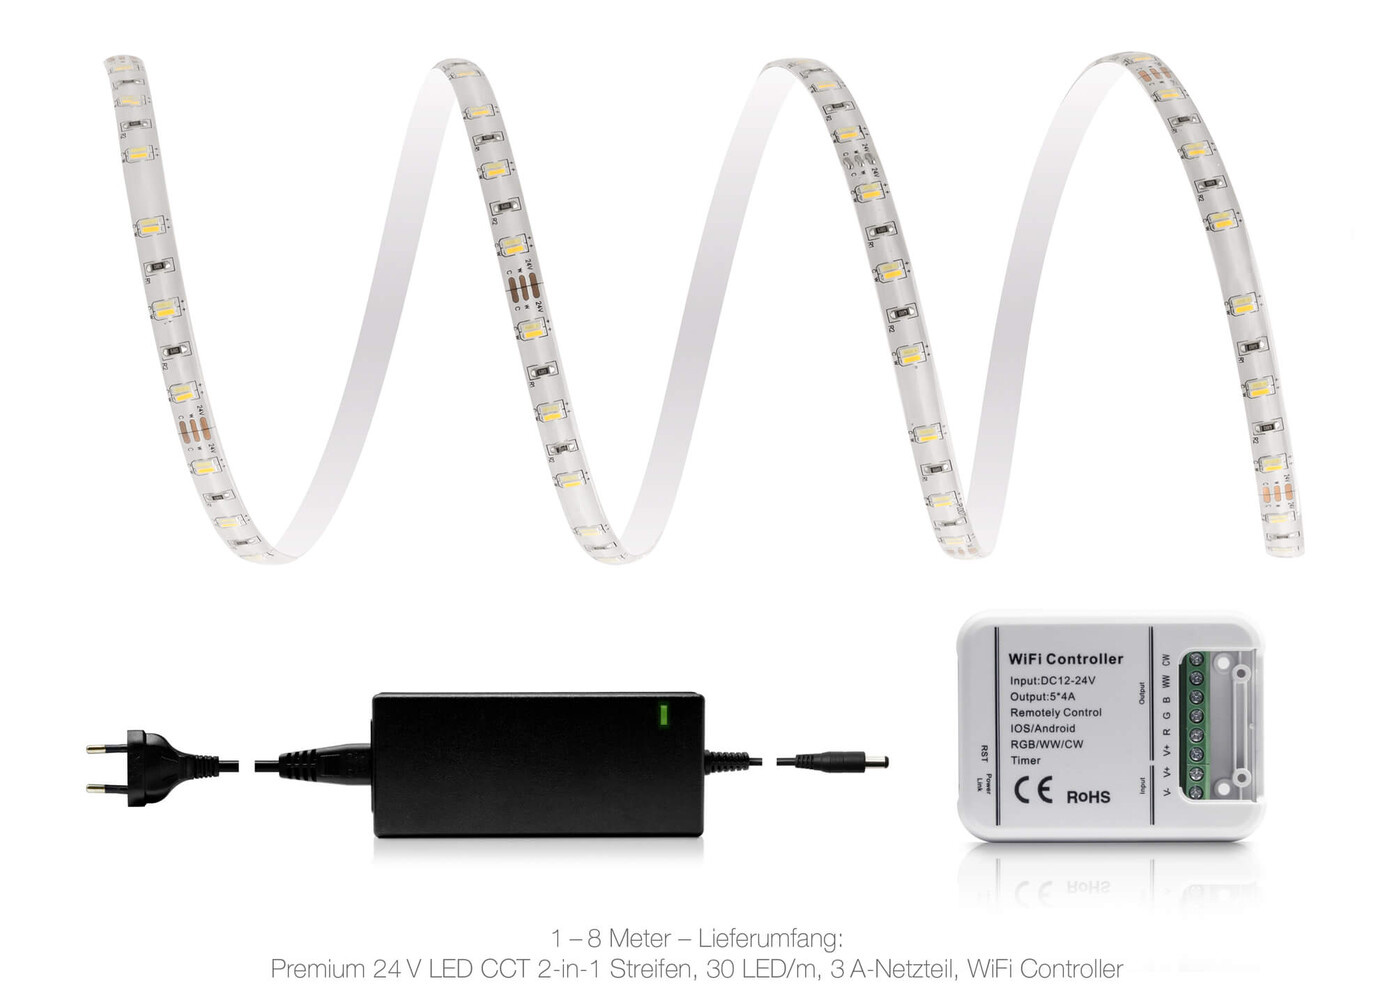 Hochwertiger LED Streifen von LED Universum mit einfacher Wlan Konnektivität und intensiver Lichtleistung